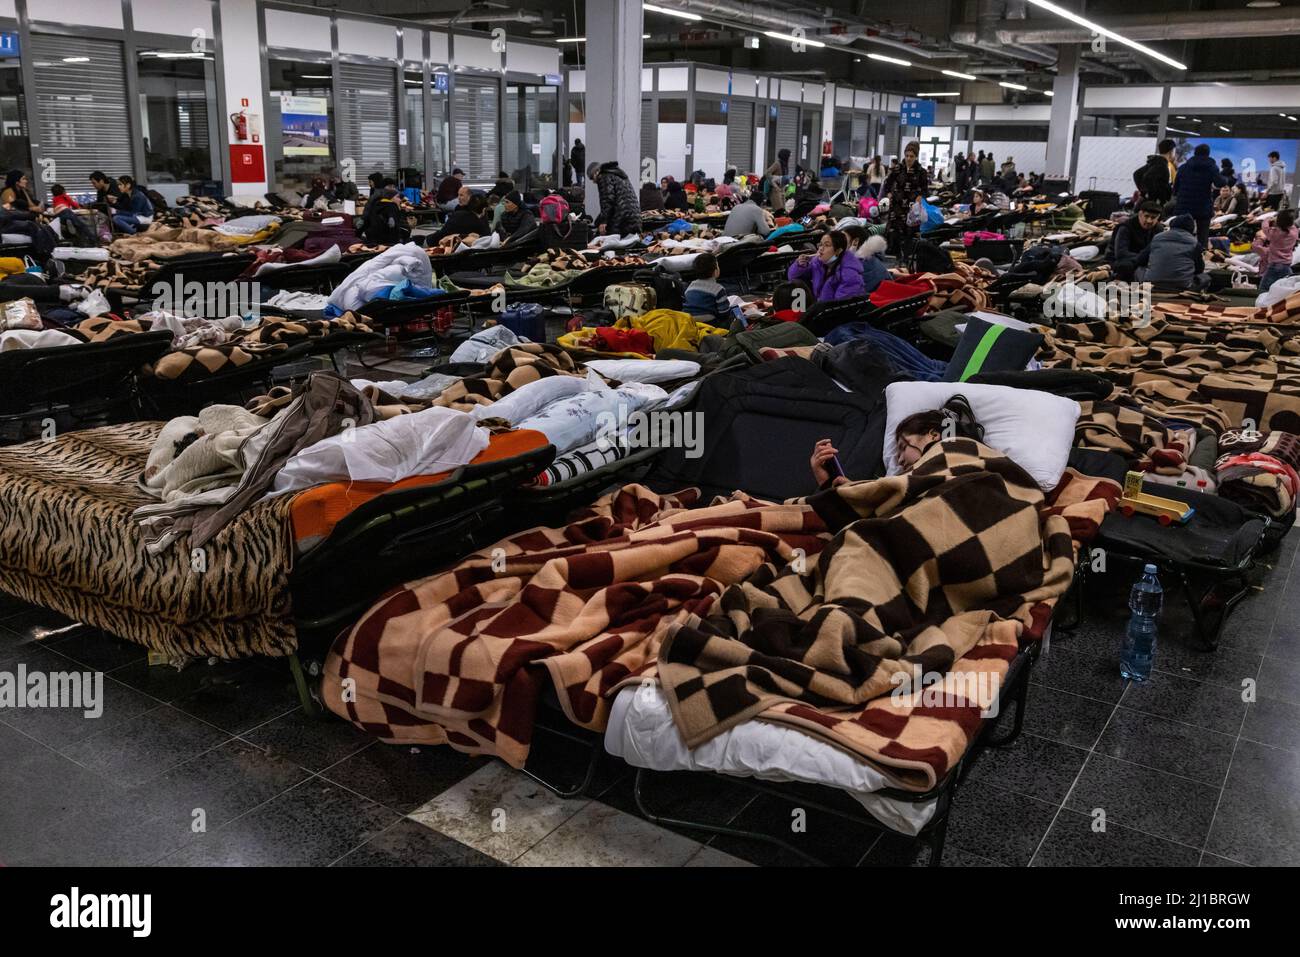 Flüchtlinge aus der Ukraine haben die zentrale Flüchtlingssammelstelle in einem Logistikzentrum in der Nähe von Korczowa im polnisch-ukrainischen Grenzgebiet erreicht. Hier können sie sich auf den zur Verfügung gestellten Babybetten ausruhen. Hier werden sie auch mit Lebensmitteln und Kleidung versorgt und dann per Bus weiter in andere Städte transportiert. Stockfoto